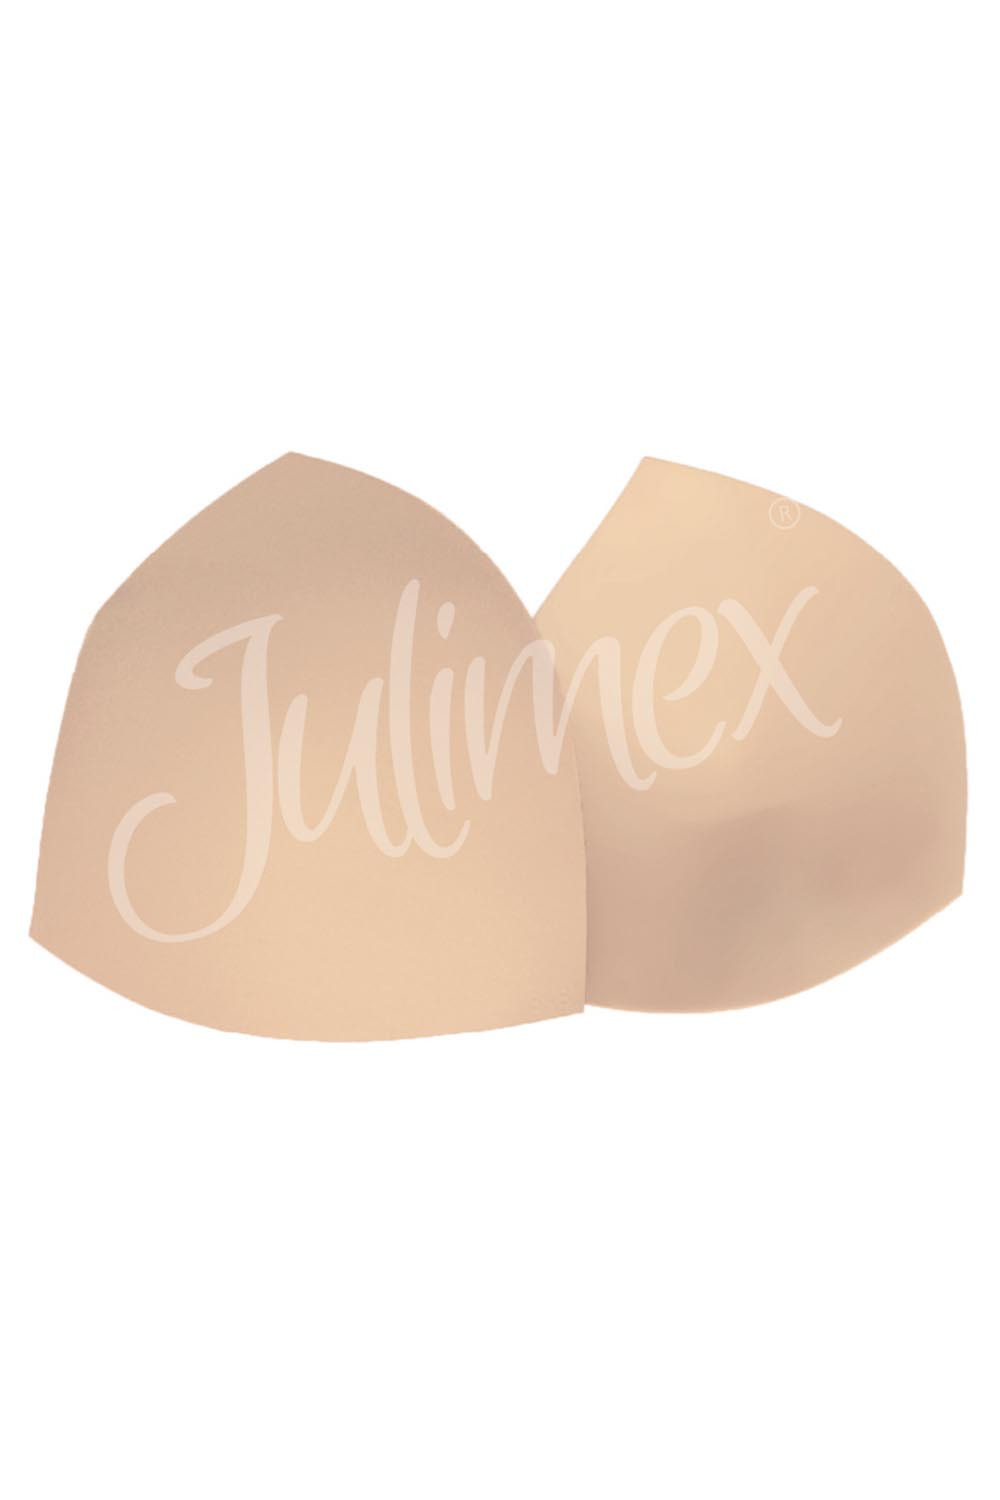 Julimex WS-11 Wkładki bikini kolor:beż C/D